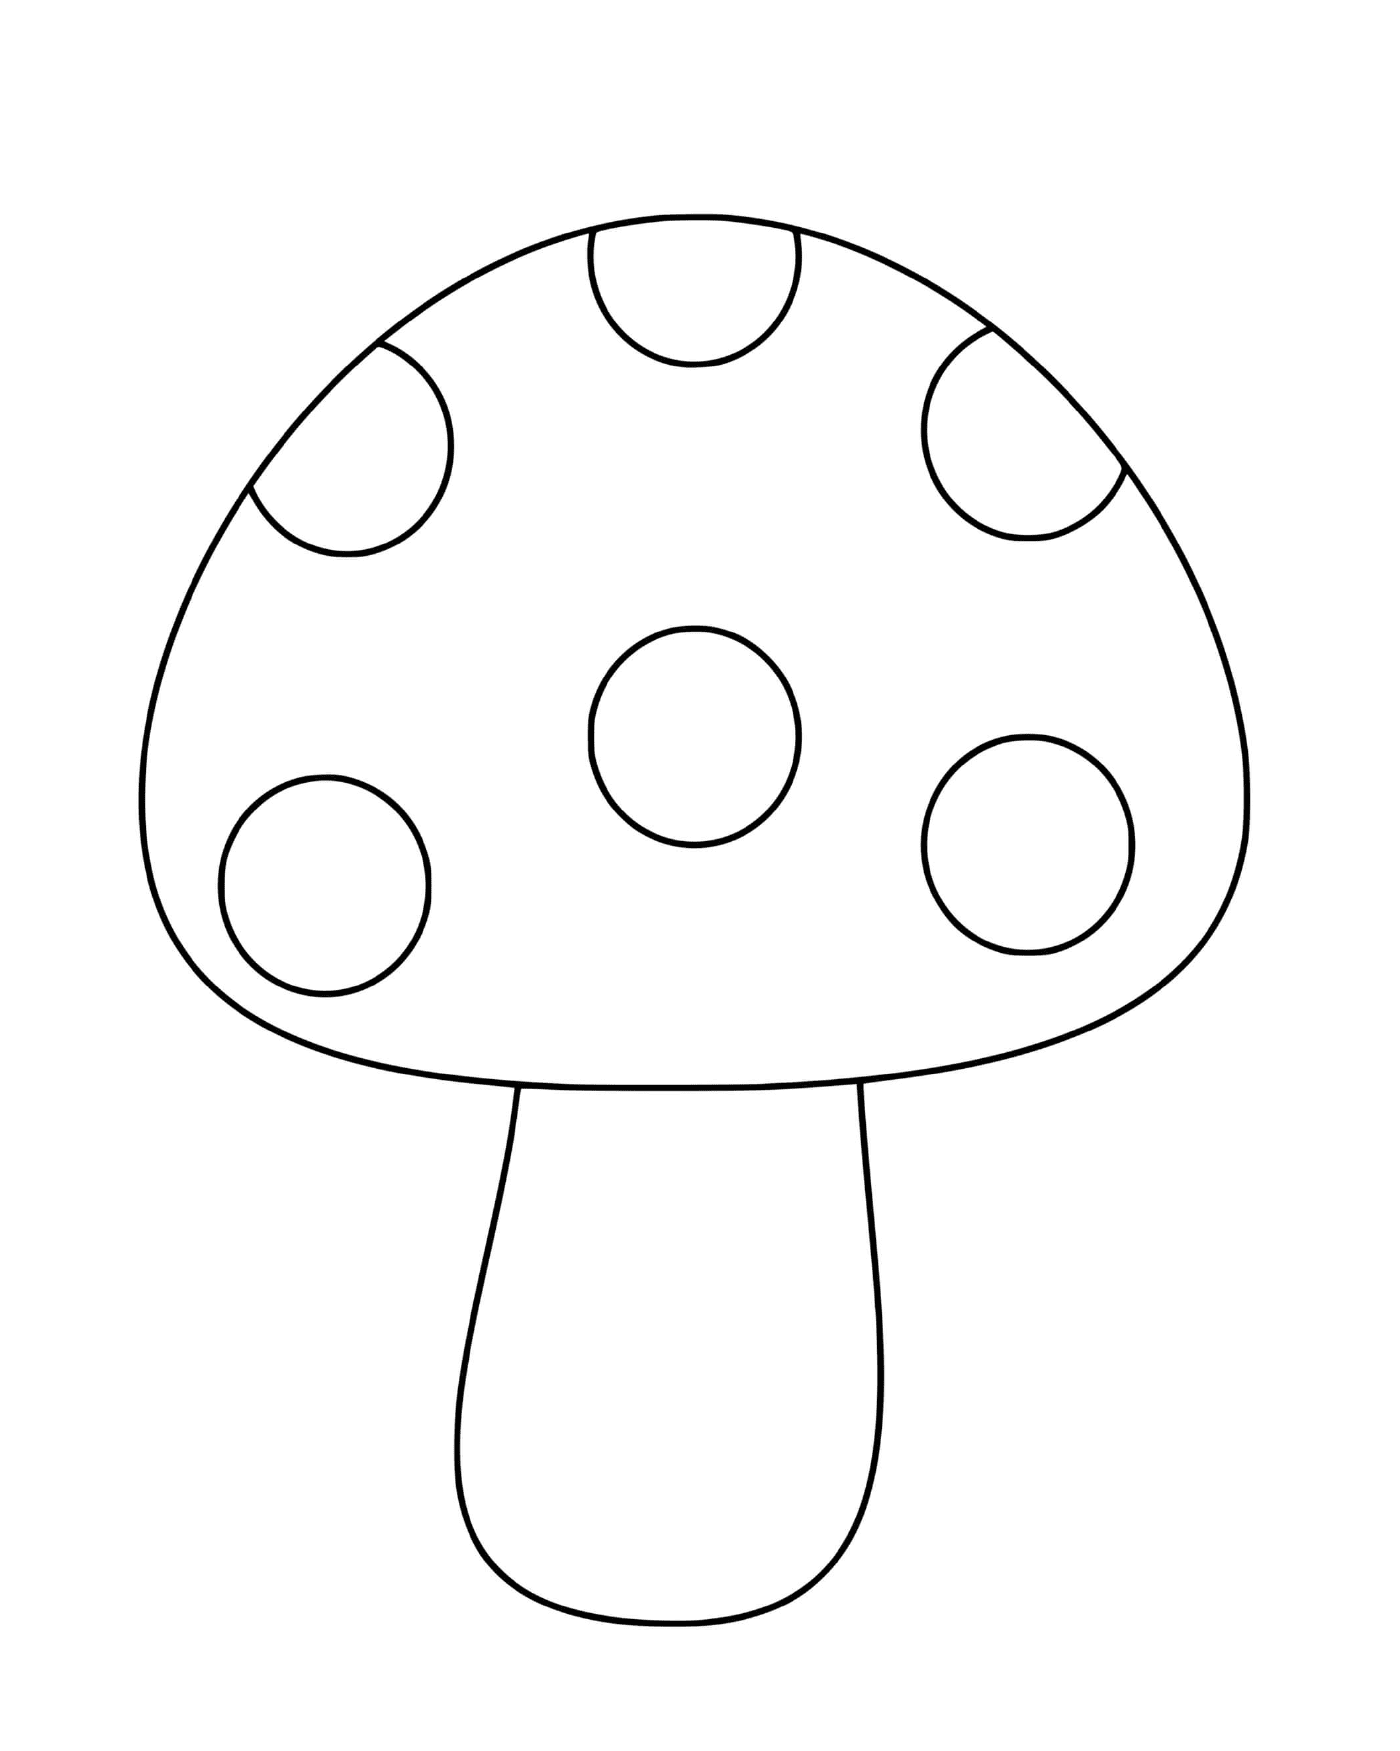  Простой гриб с классической внешностью 